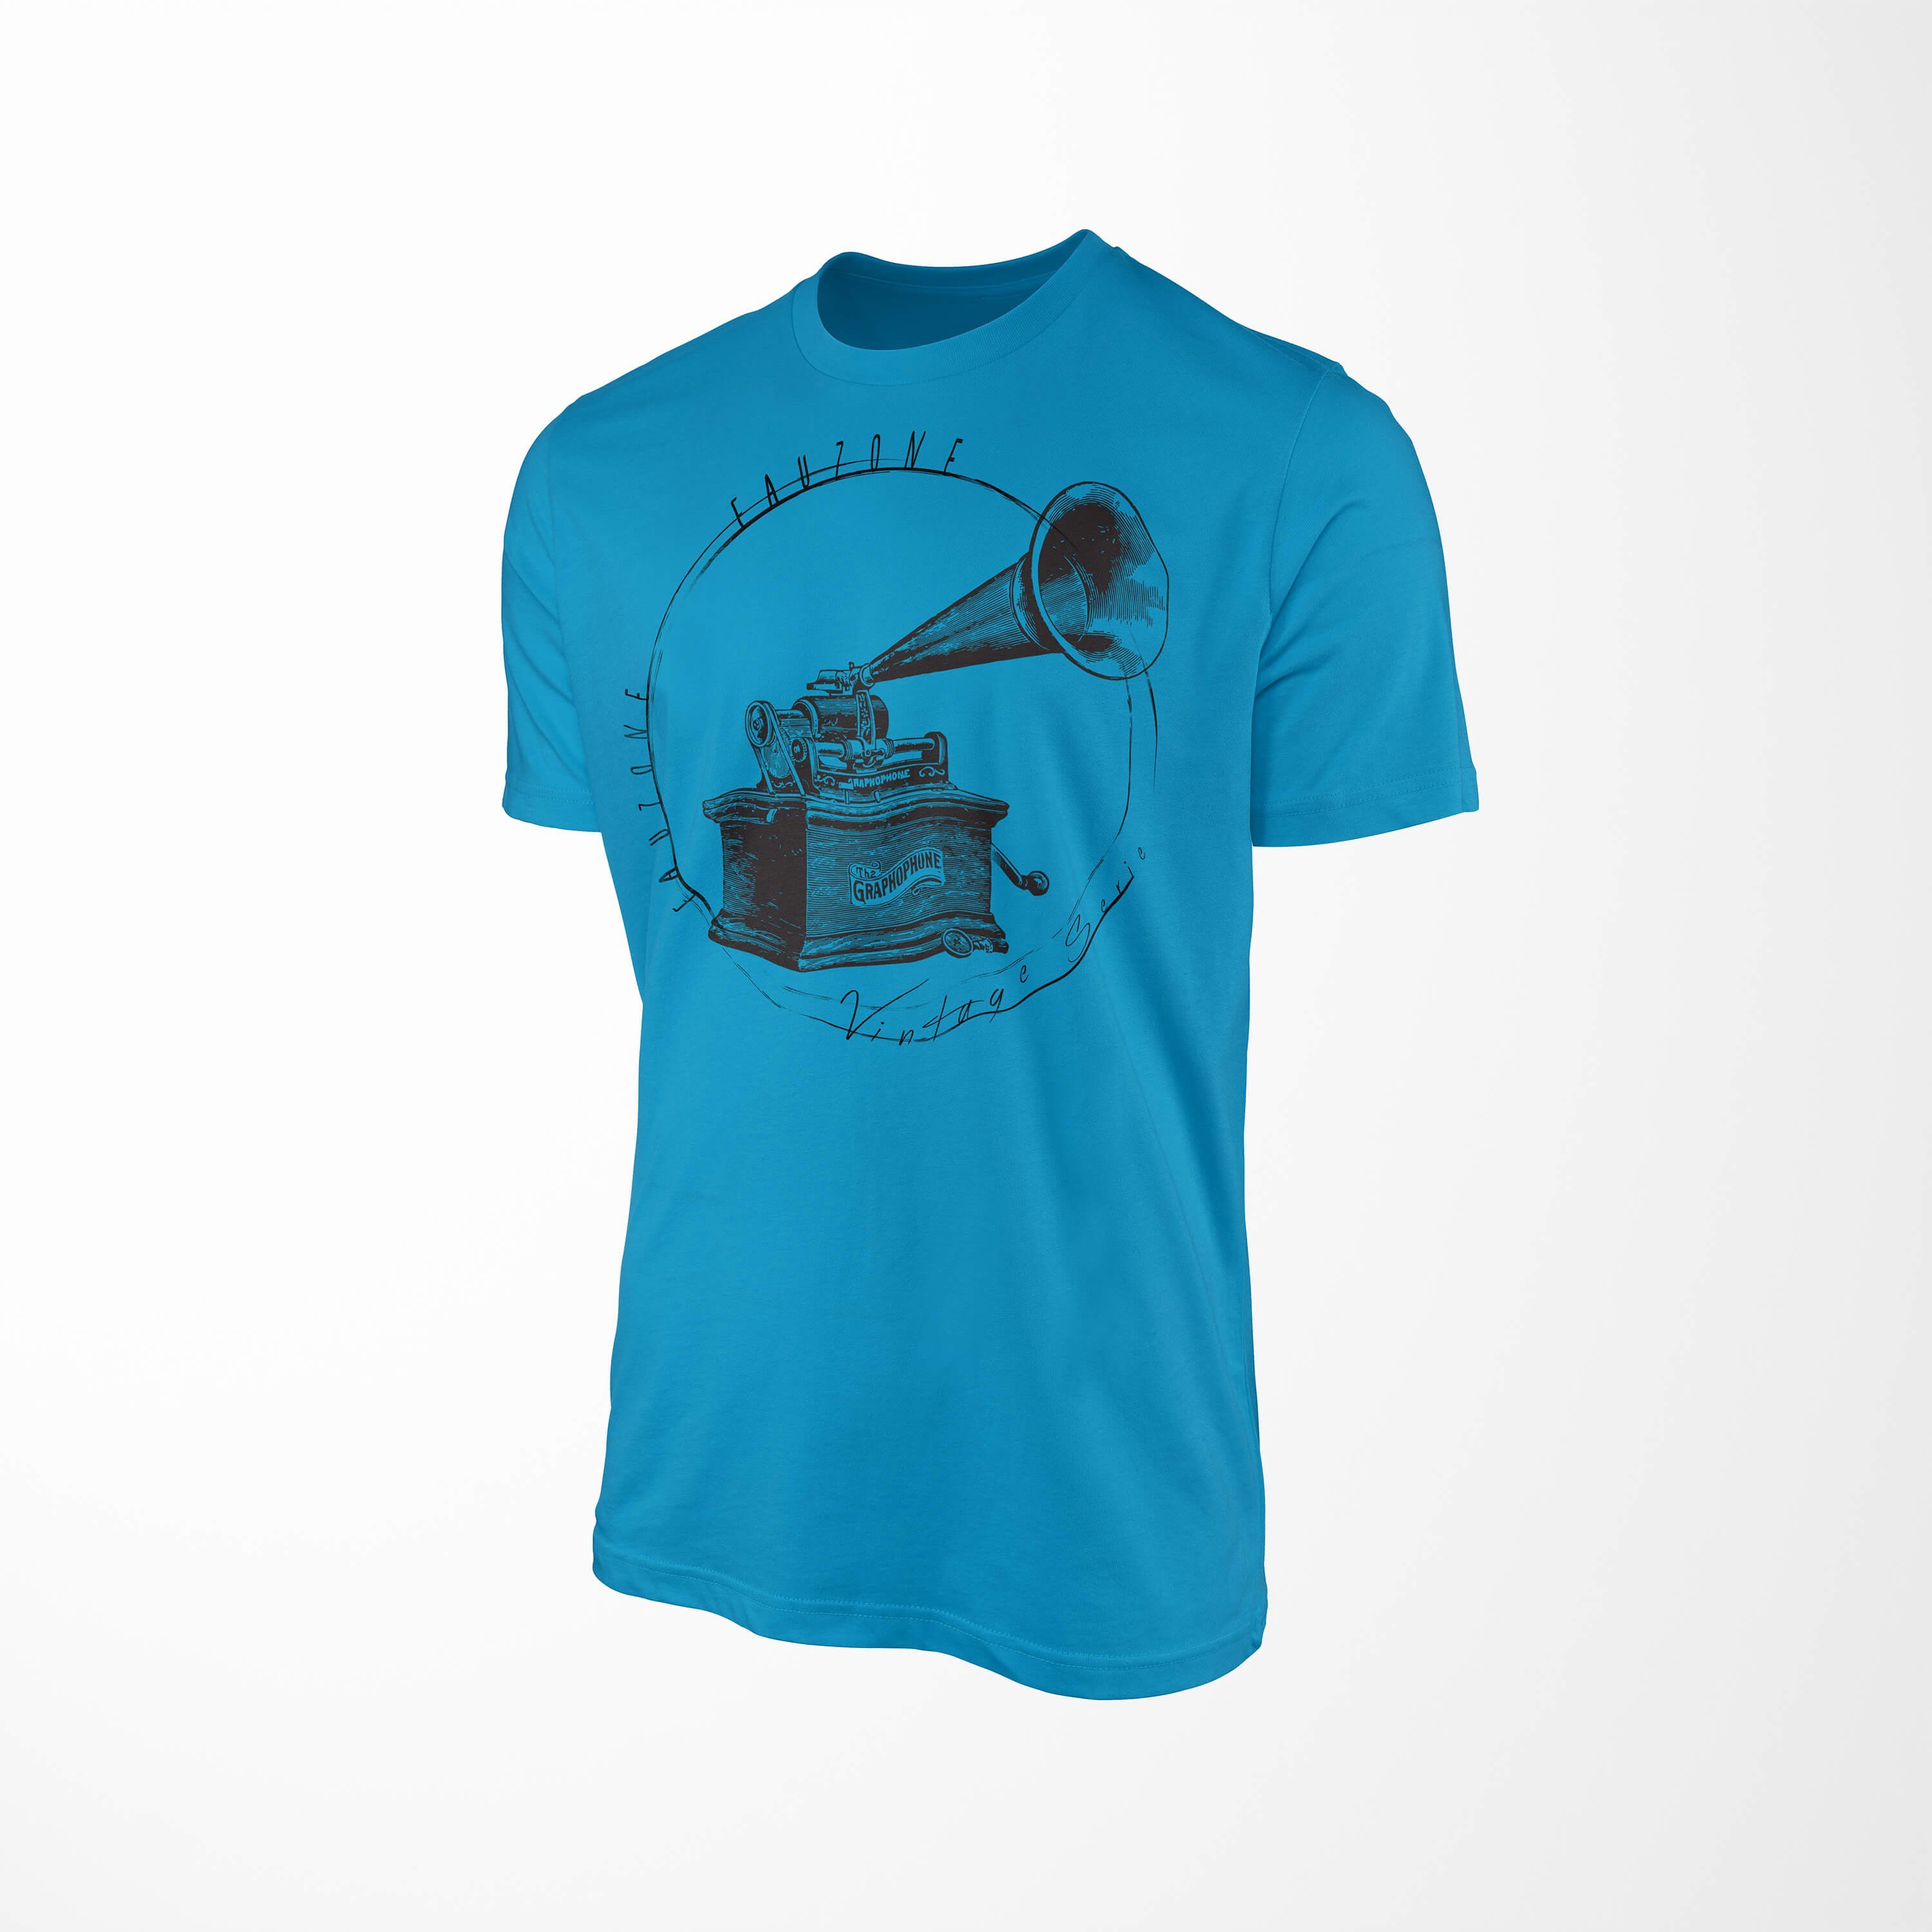 Art T-Shirt Vintage Atoll T-Shirt Sinus Herren Grammophon